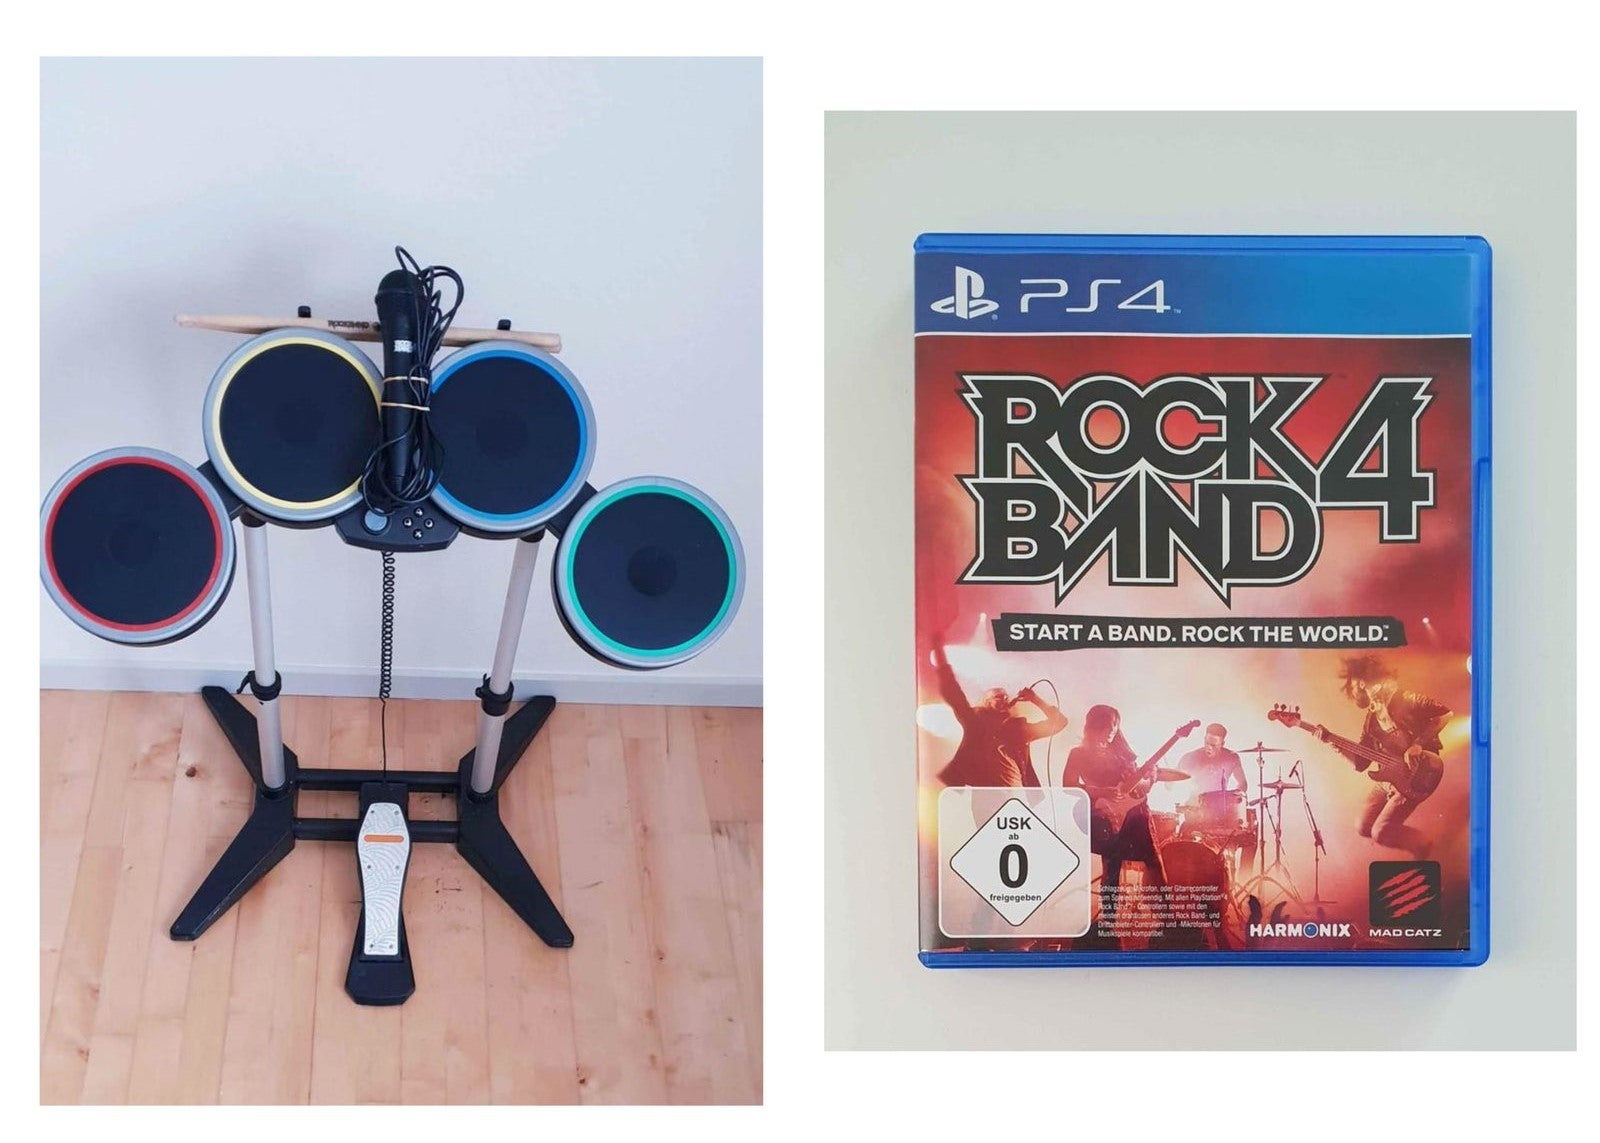 Playstation 5, Rockband